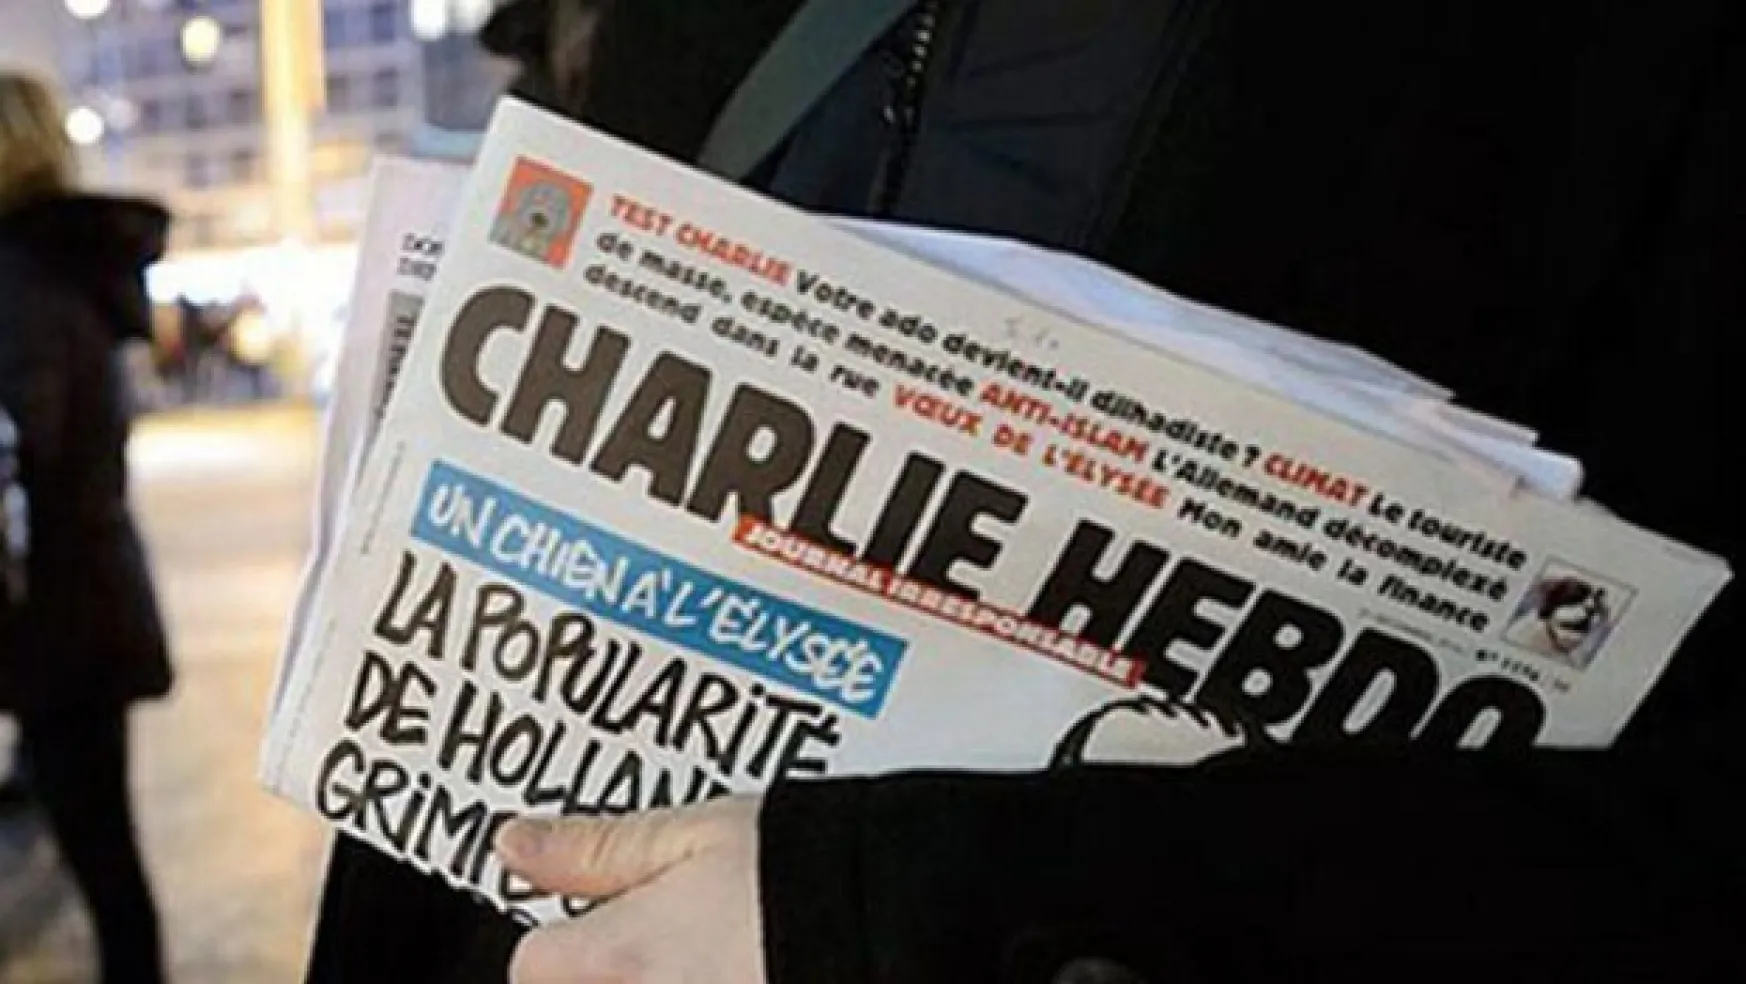 Charlie Hebdo yetkilileri hakkında soruşturma başlatıldı